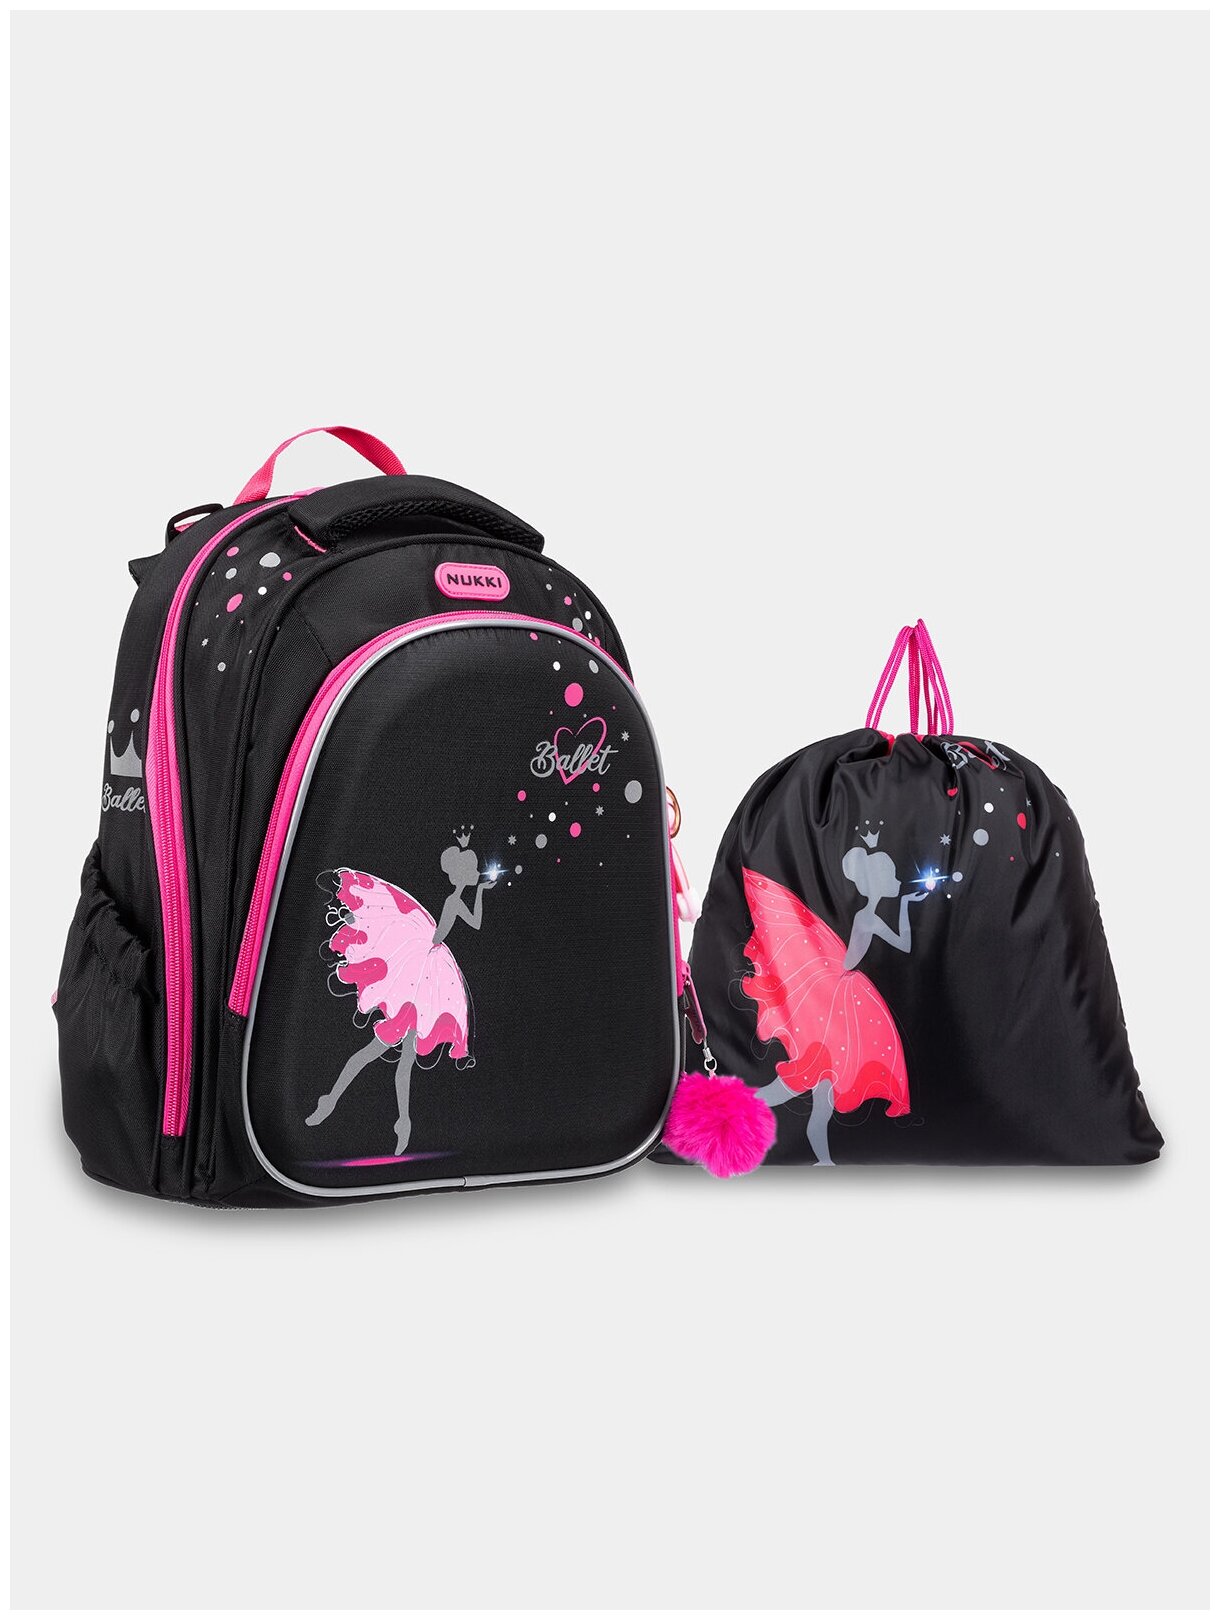 Ранец школьный для девочек NUKKI Балет черный; розовый; серый с мешком для обуви, 370х300х160 мм, 800 грамм